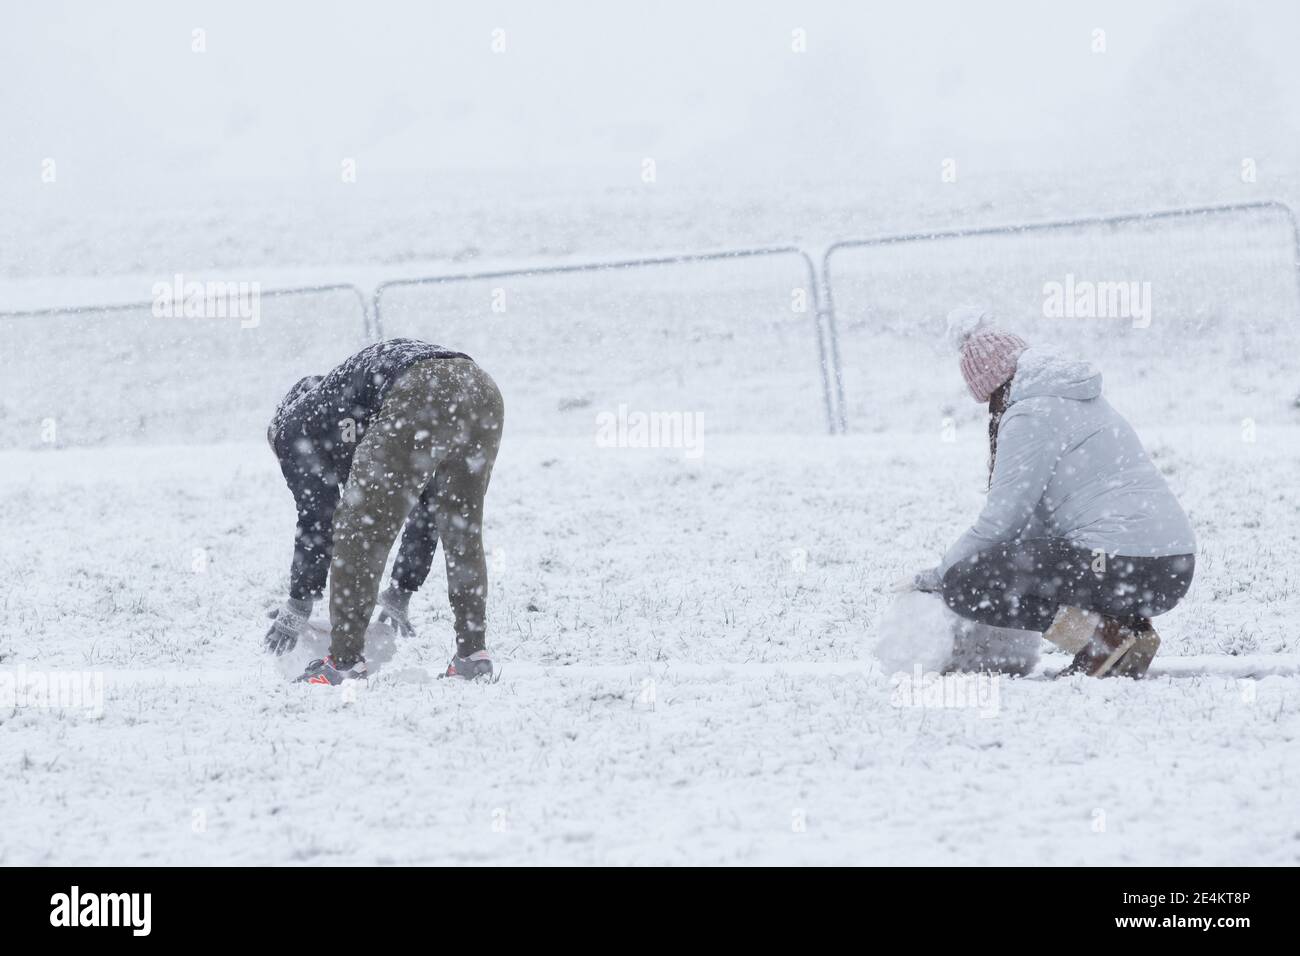 Londres, Royaume-Uni. 24 janvier 2021. Un homme et une femme roulent de grosses boules de neige au parc Gunnersbury. Crédit : Liam Asman/Alay Live News Banque D'Images